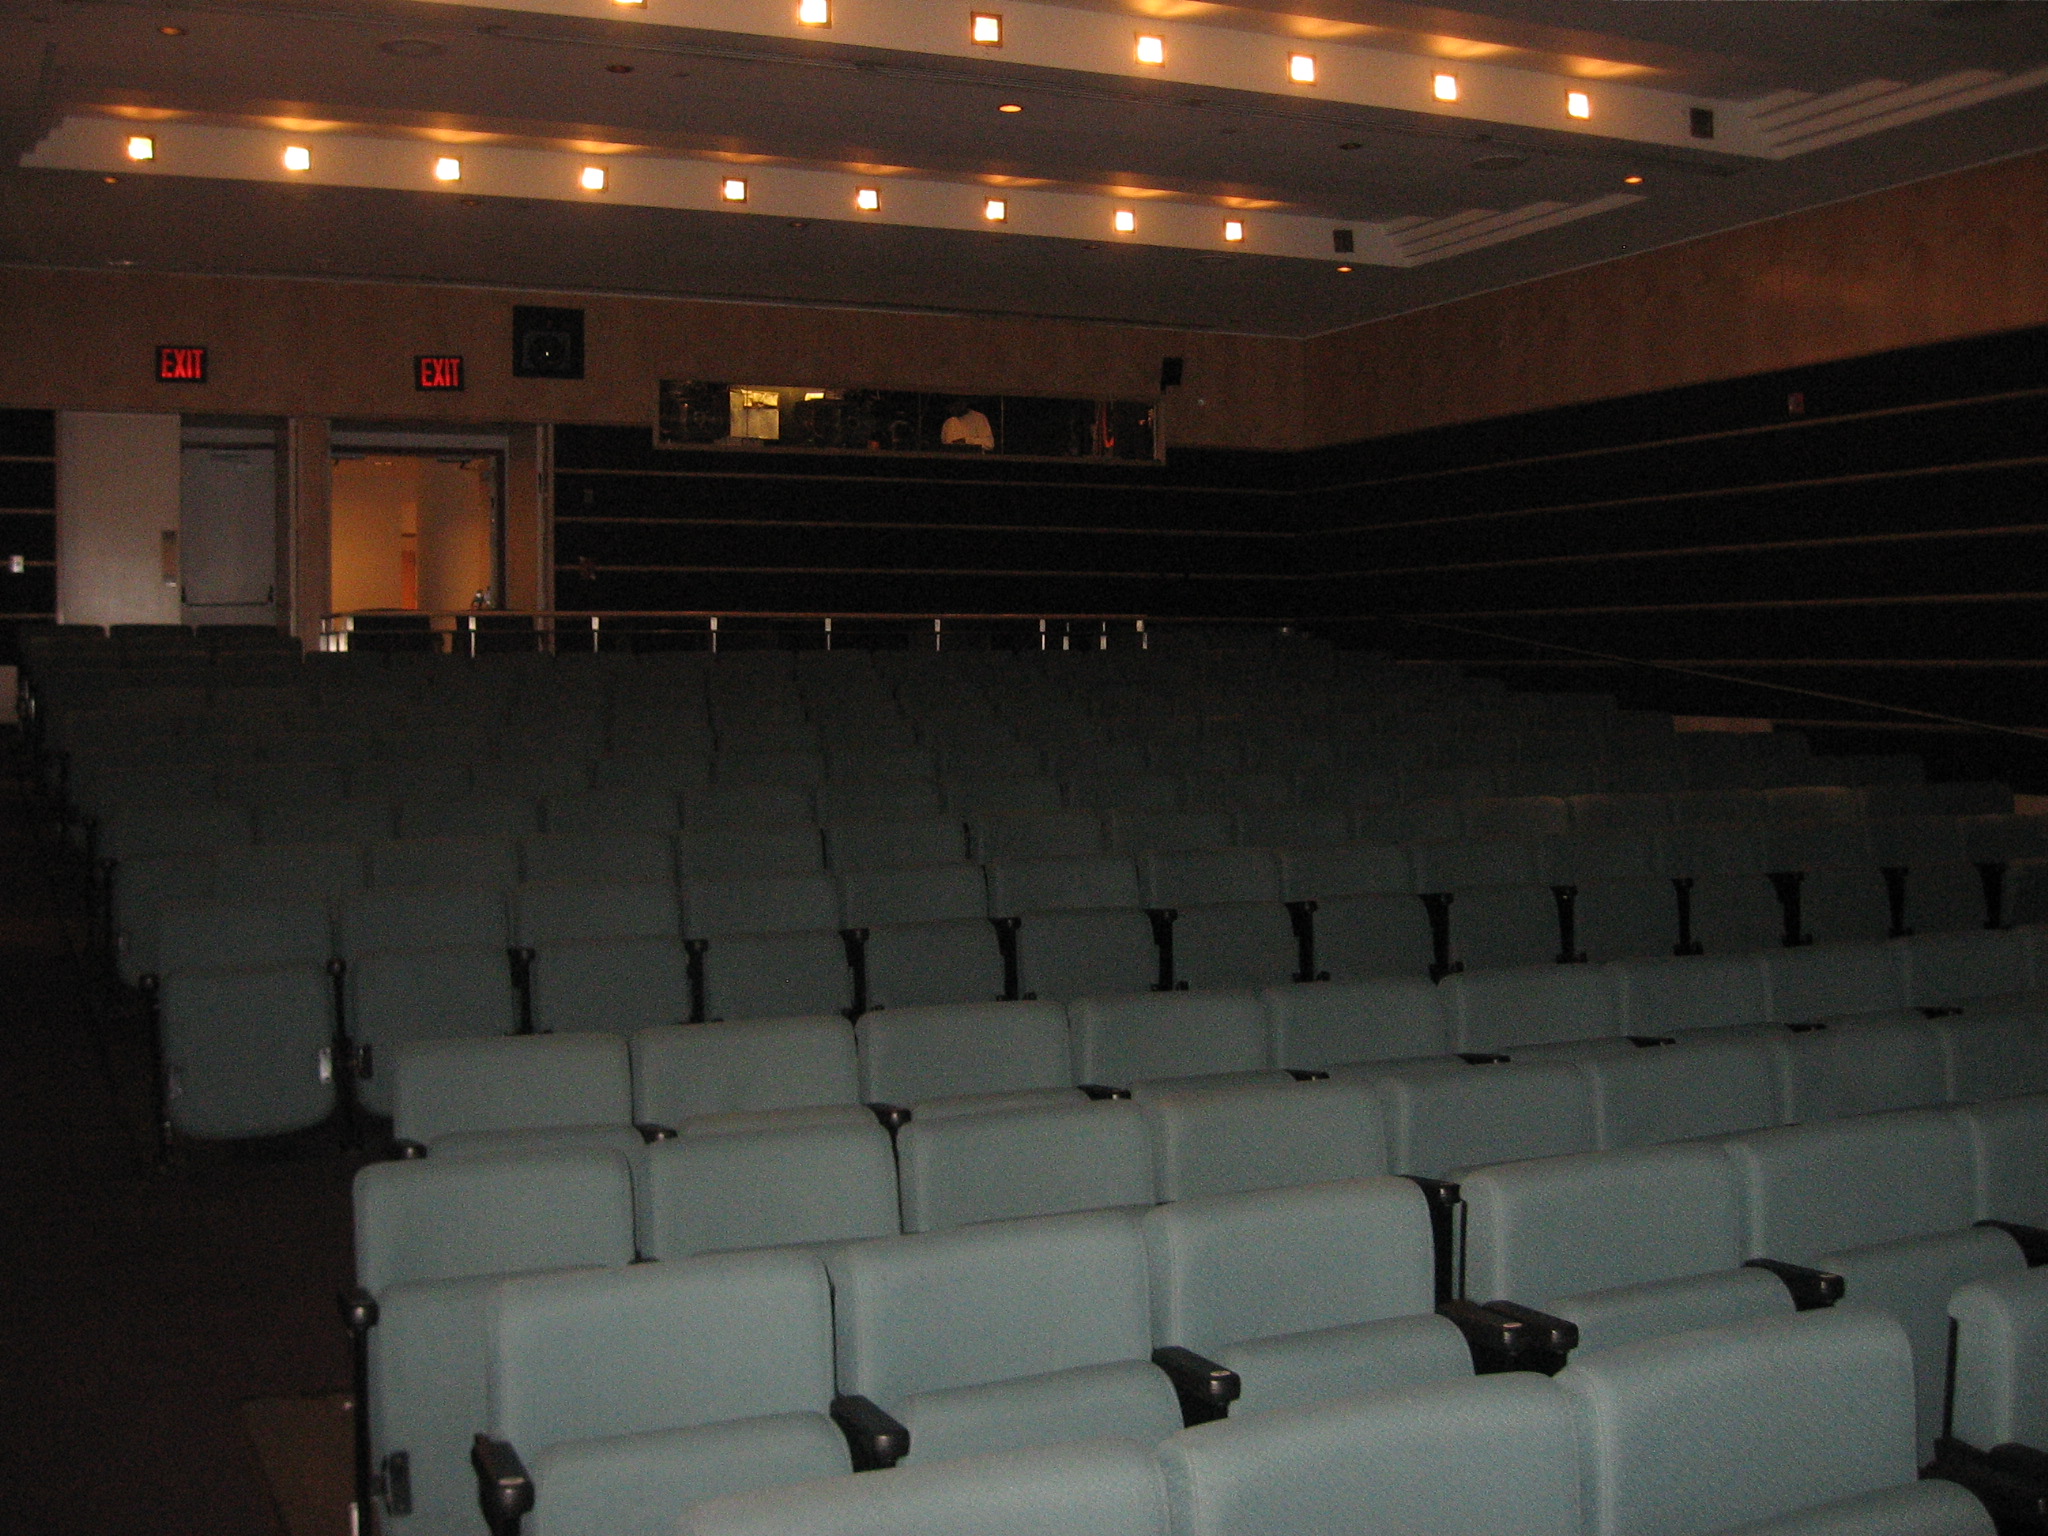 Original Auditorium Seating